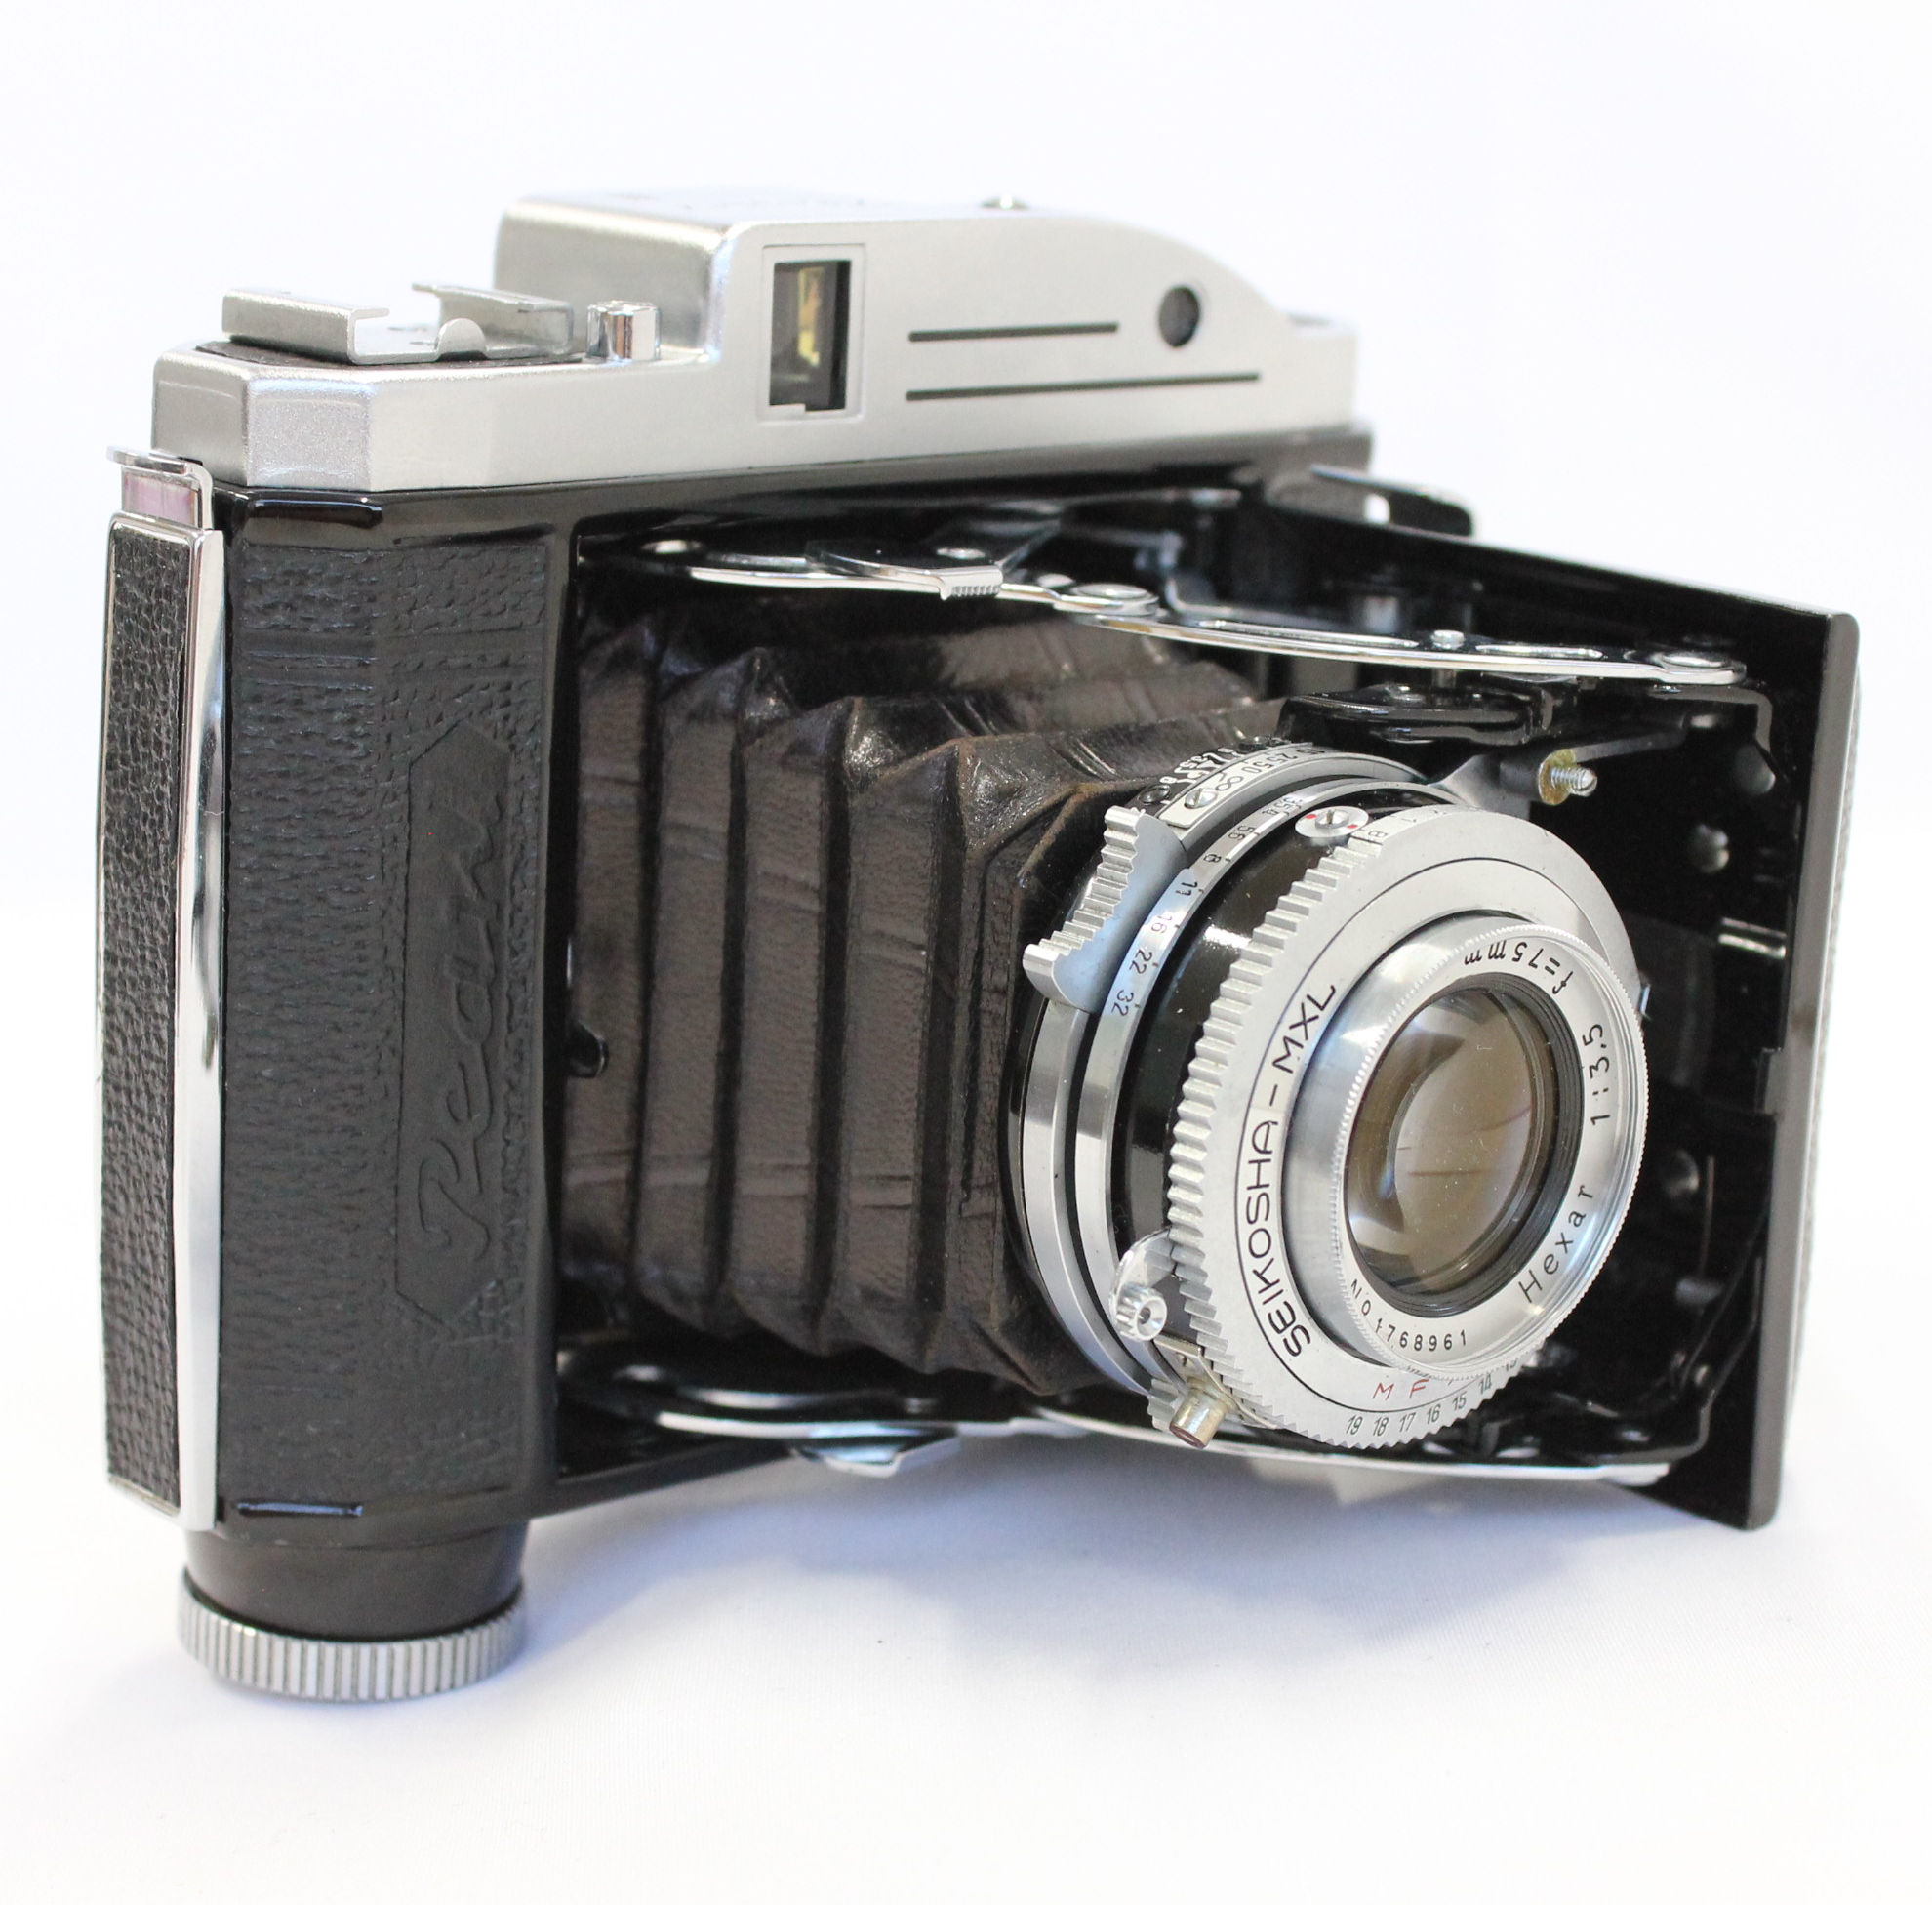 Konica Konishiroku Pearl III 6x4.5 Camera with Hexar 75mm F/3.5 Lens from  Japan (C1252) | Big Fish J-Camera (Big Fish J-Shop)